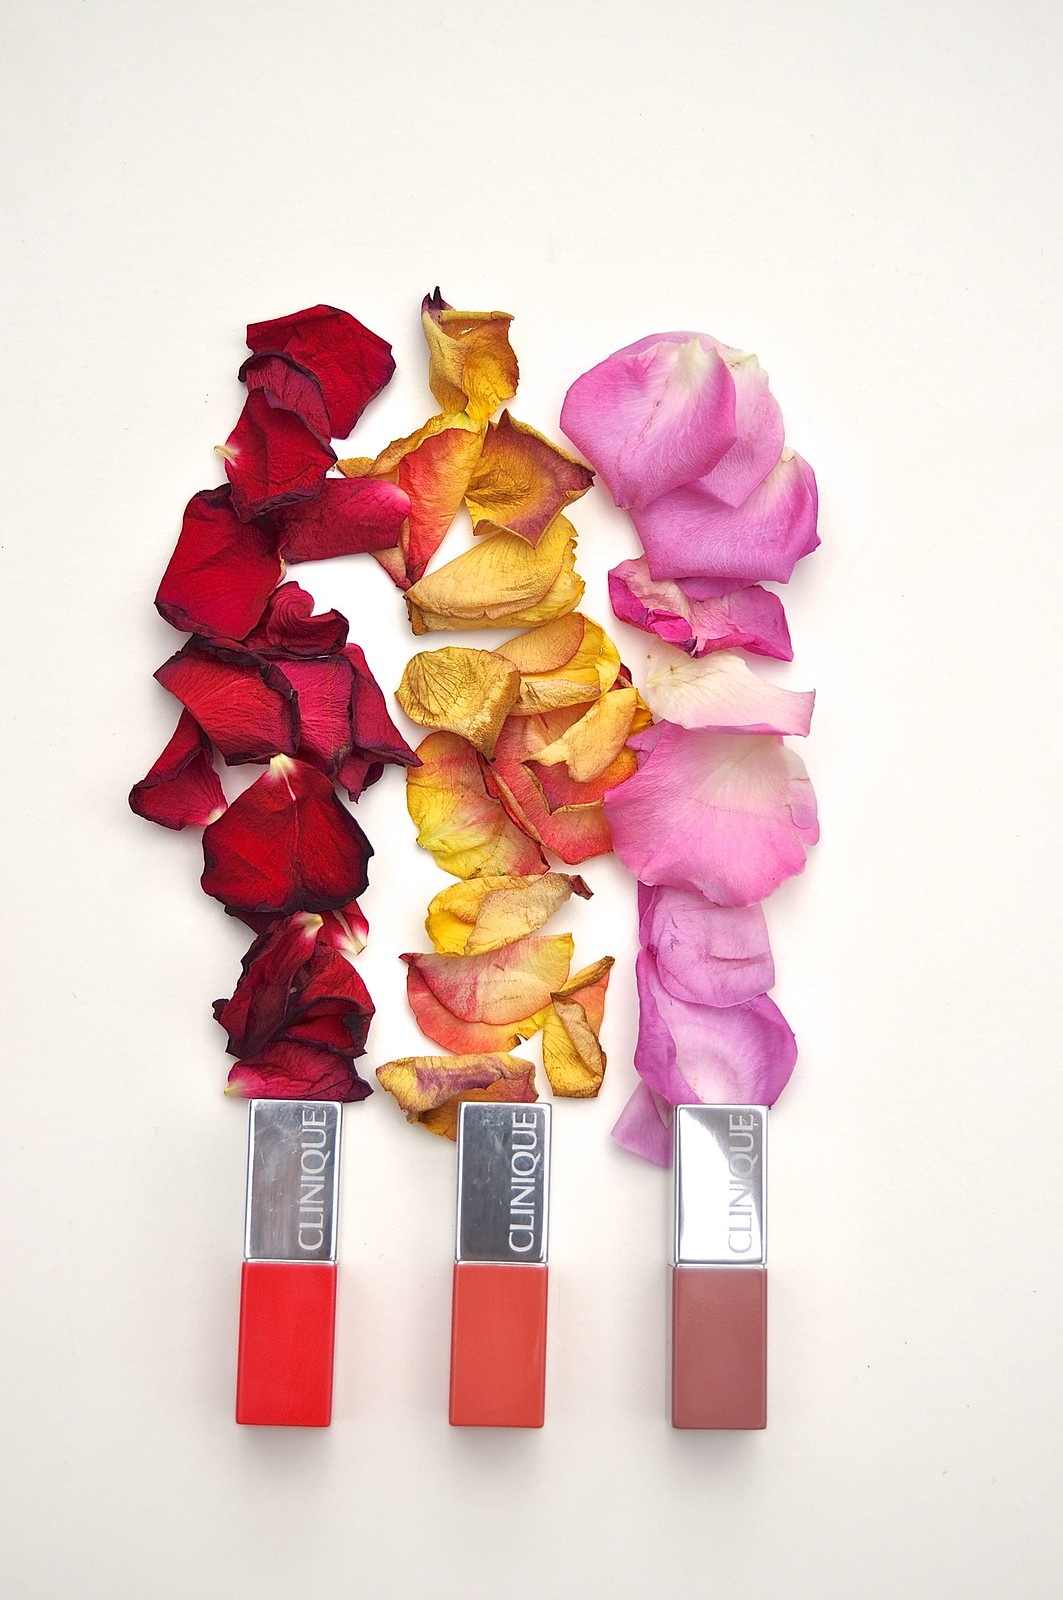 Clinique Lip Pop lipstick in Nude, Cherry and Melon 1